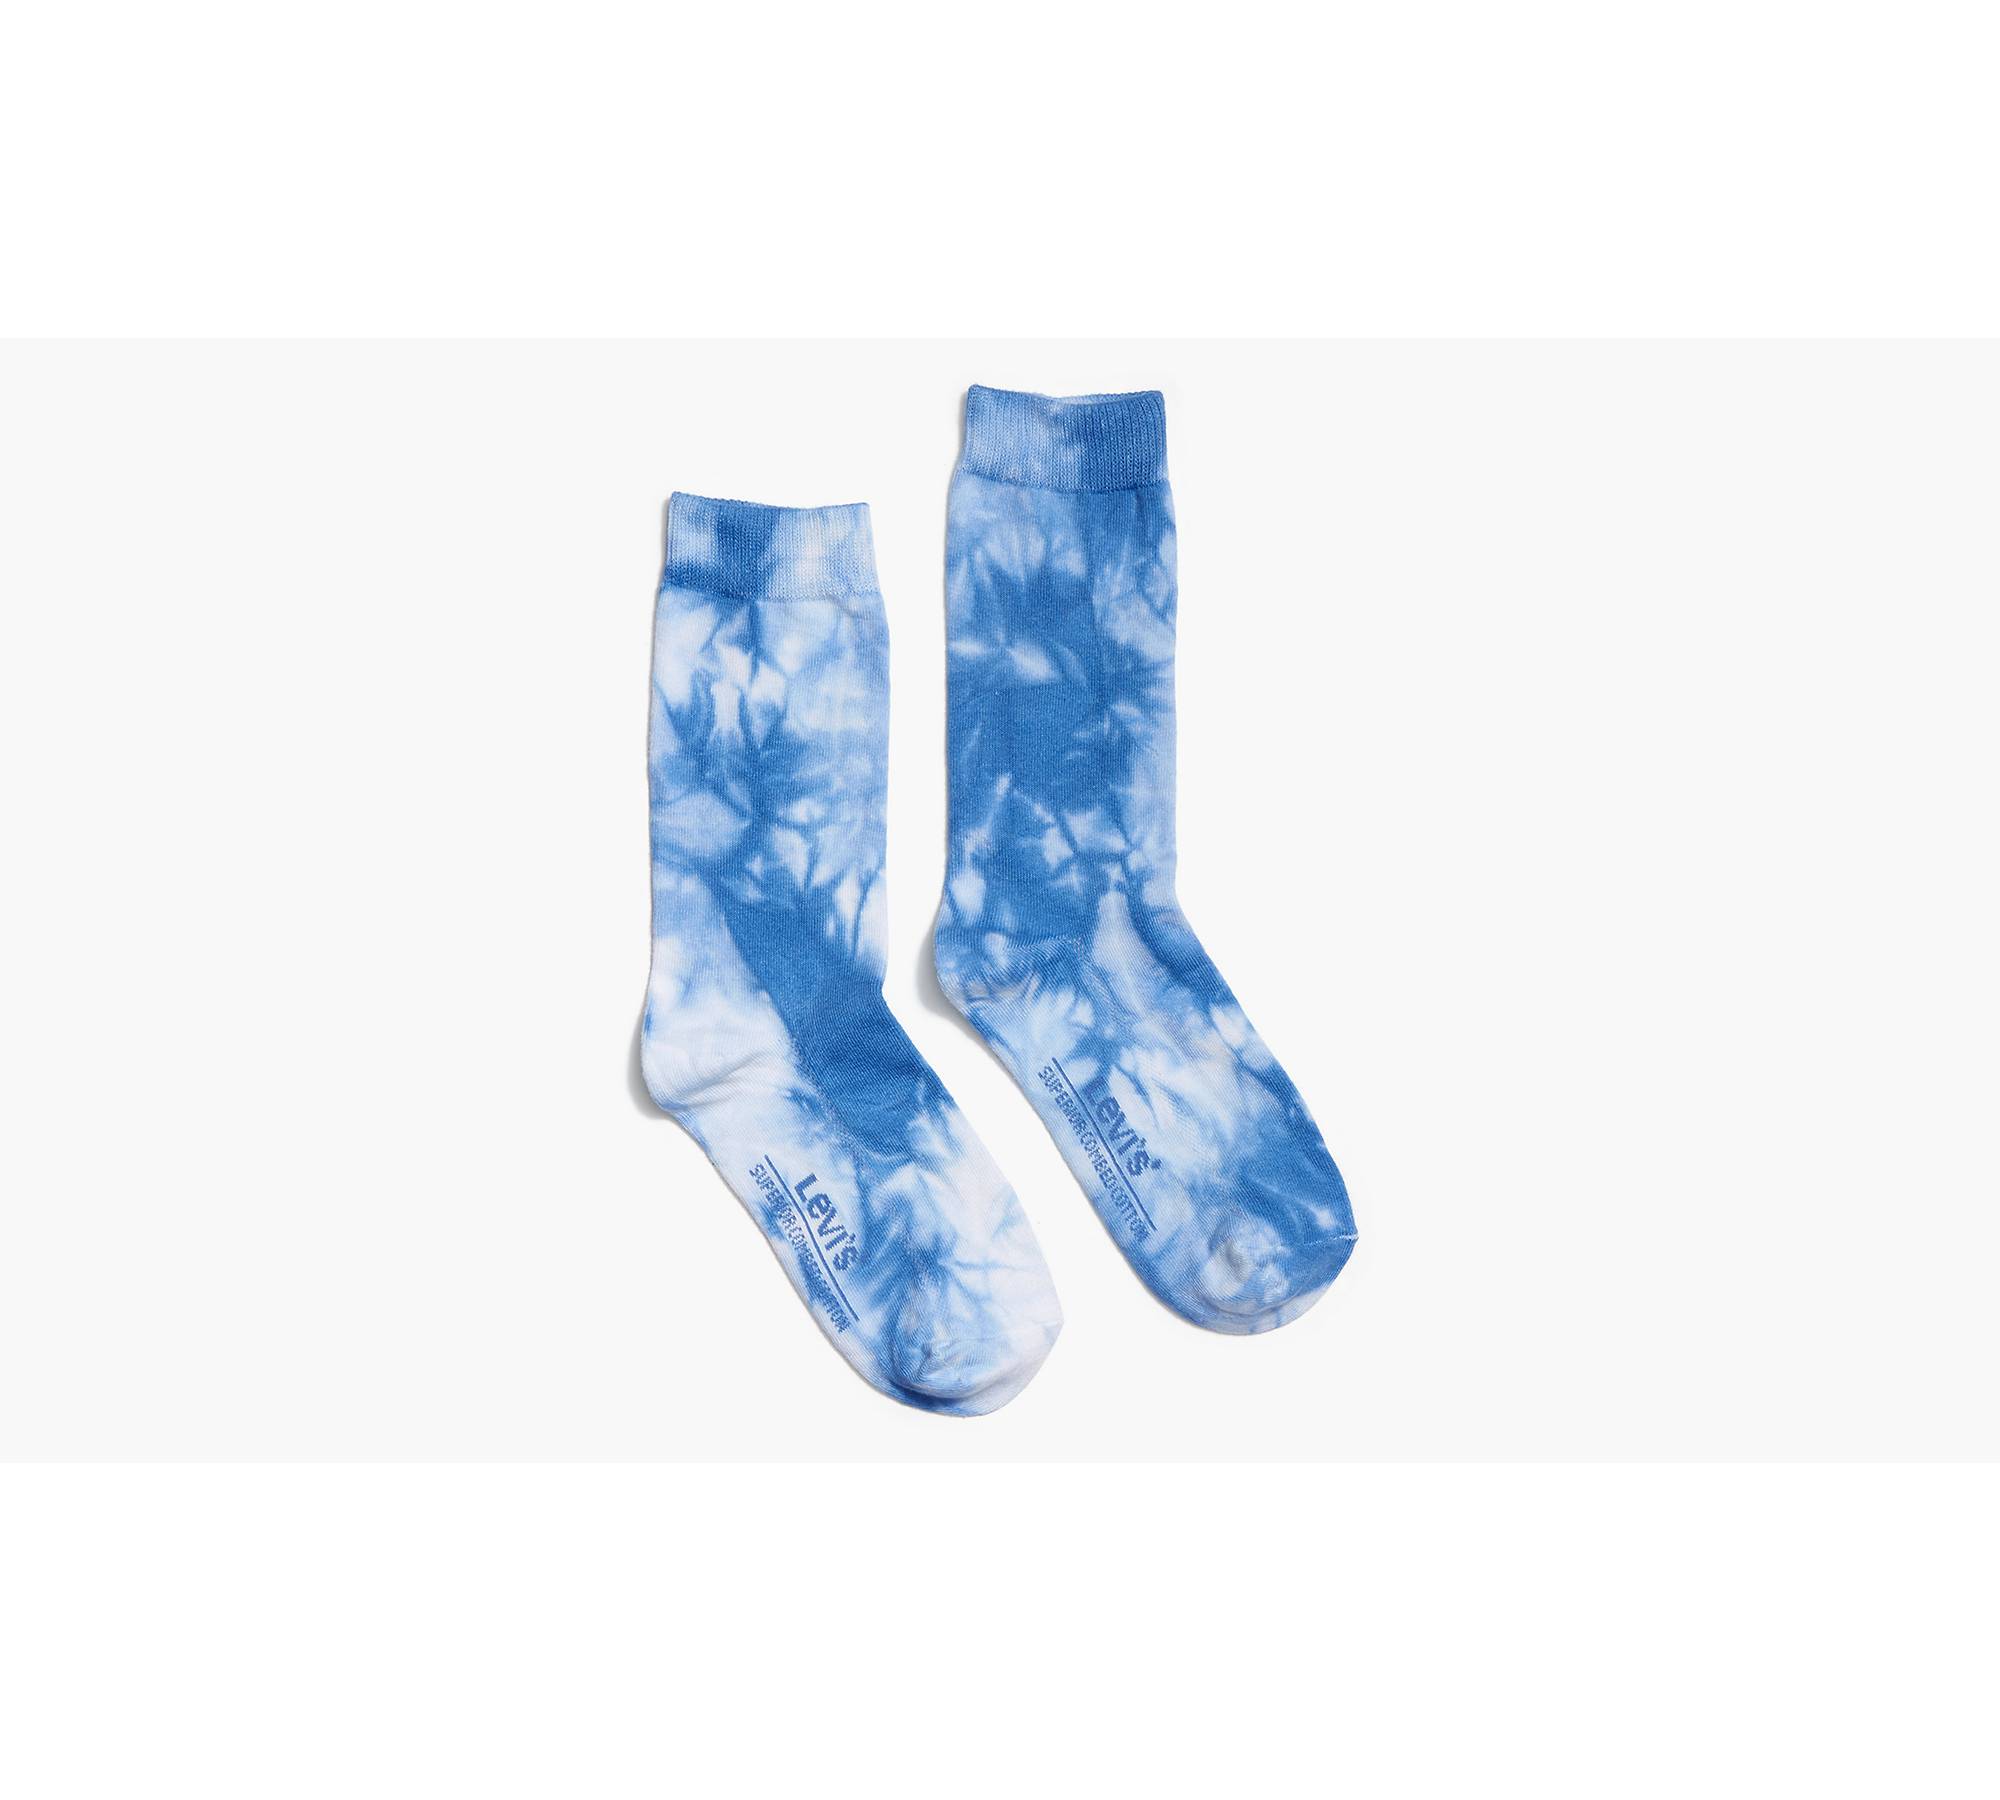 Unisex 6 Sock - Blue Tie Dye